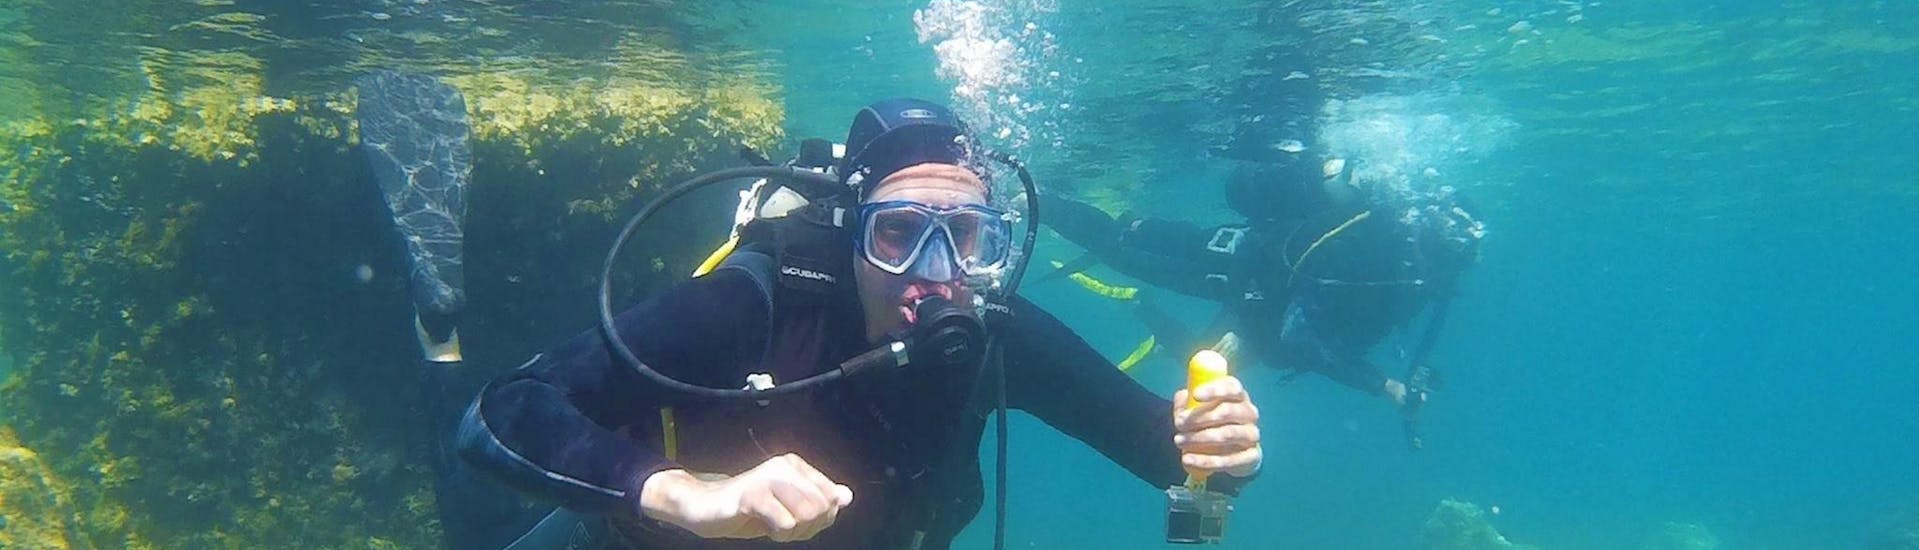 Un uomo va alla scoperta delle immersioni subacquee nella baia di Kontokali con lo Scubanauts Corfu Diving Center.